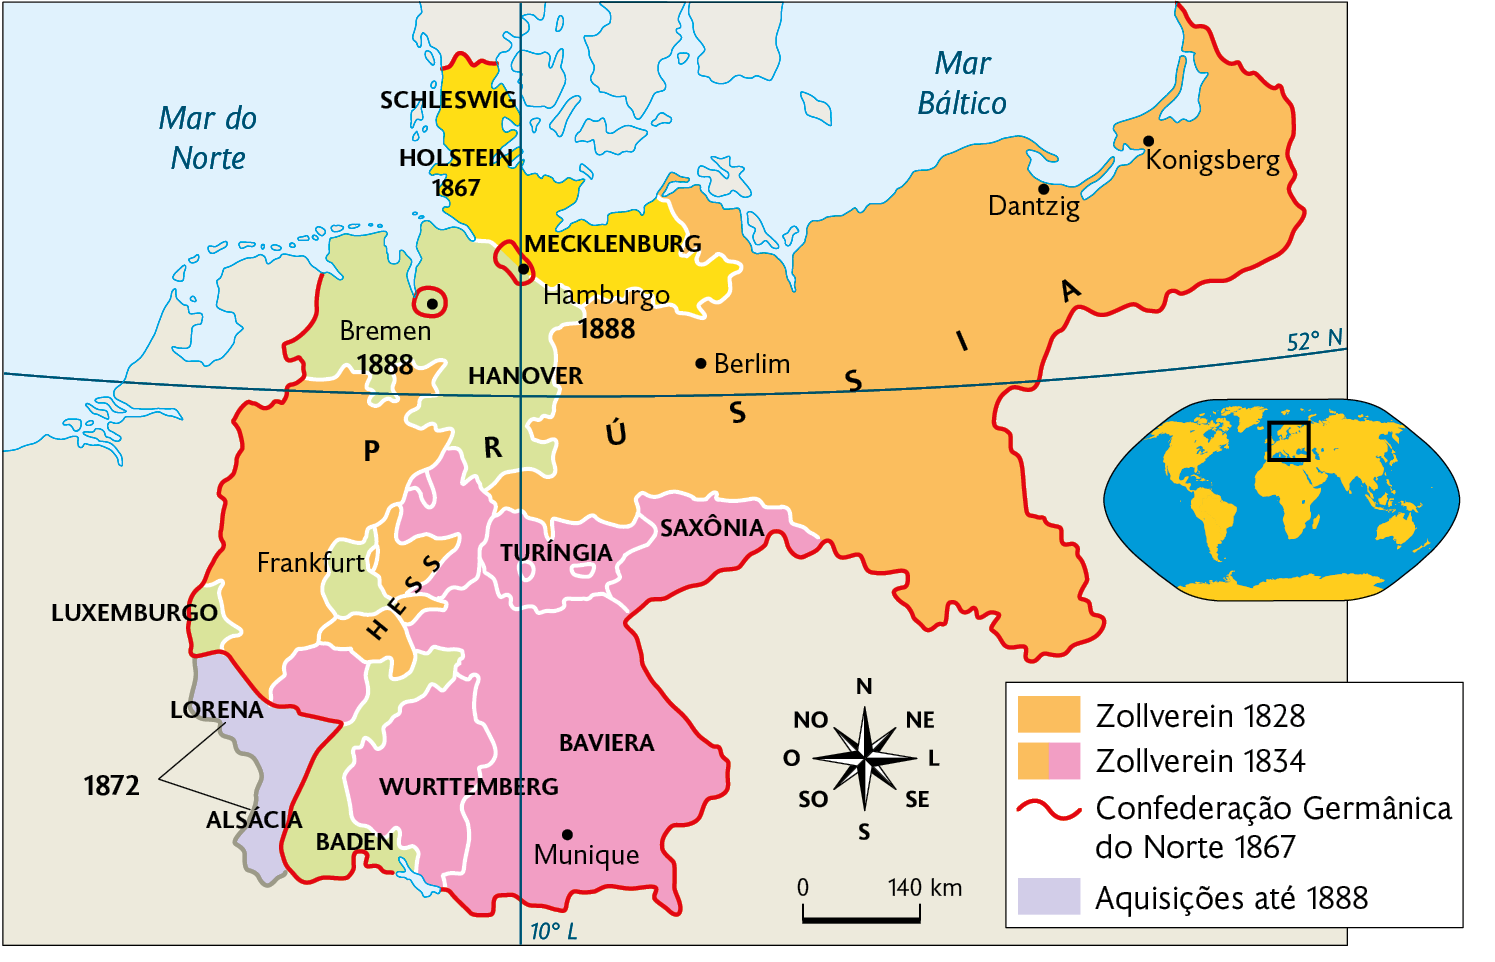 Mapa. A unificação da Alemanha (século 19). Mapa territorial destacado conforme a legenda: Zollverein 1828: PRÚSSIA  e HESS. Cidades destacadas: Berlim, Dantzig e Konigsberg. Zollverein 1834: Juntam-se SAXÔNIA, TURÍNGIA, BAVIERA, WURTTEMBERG. Cidade destacada: Munique. Confederação Germânica do Norte 1867: PRÚSSIA, MECKLENBURG, HOLSTEIN 1867, SHLESWIG, HANOVER, HESS, LUXEMBURGO, BADEN, WURTTEMBERG, BAVIERA, TURÍNGIA e SAXÔNIA. Cidades destacadas: Koingberg, Dantzig, Berlim, Frankfurt e Munique. Aquisições até 1888: LORENA, ALSÁCIA (1872) À direita, planisfério destacando parte da Europa. Abaixo, representação da rosa dos ventos e escala de 140 quilômetros por centímetro.